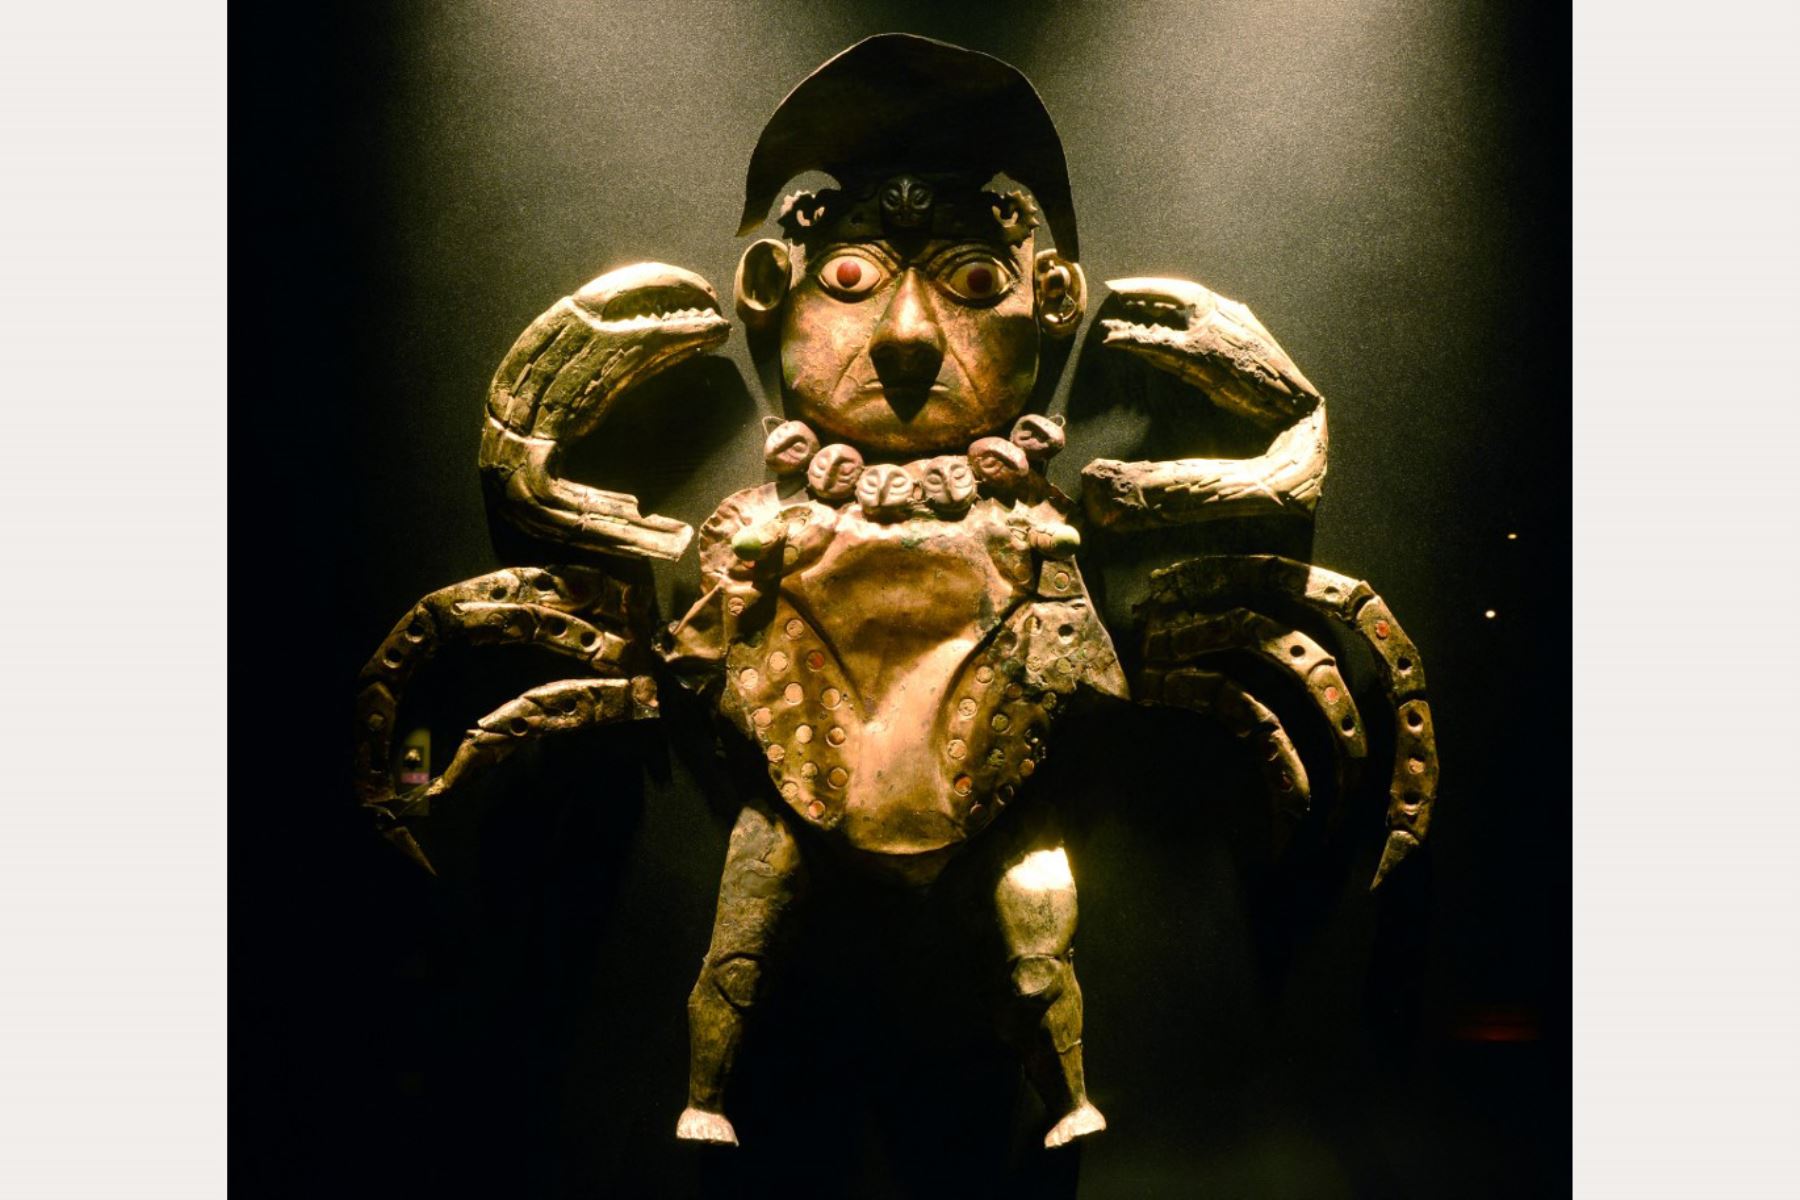 Una máscara ceremonial de cobre que representa un cangrejo con rostro humano se exhibe en el Museo Tumba Real del Señor de Sipán en Lambayeque.

Foto: AFP